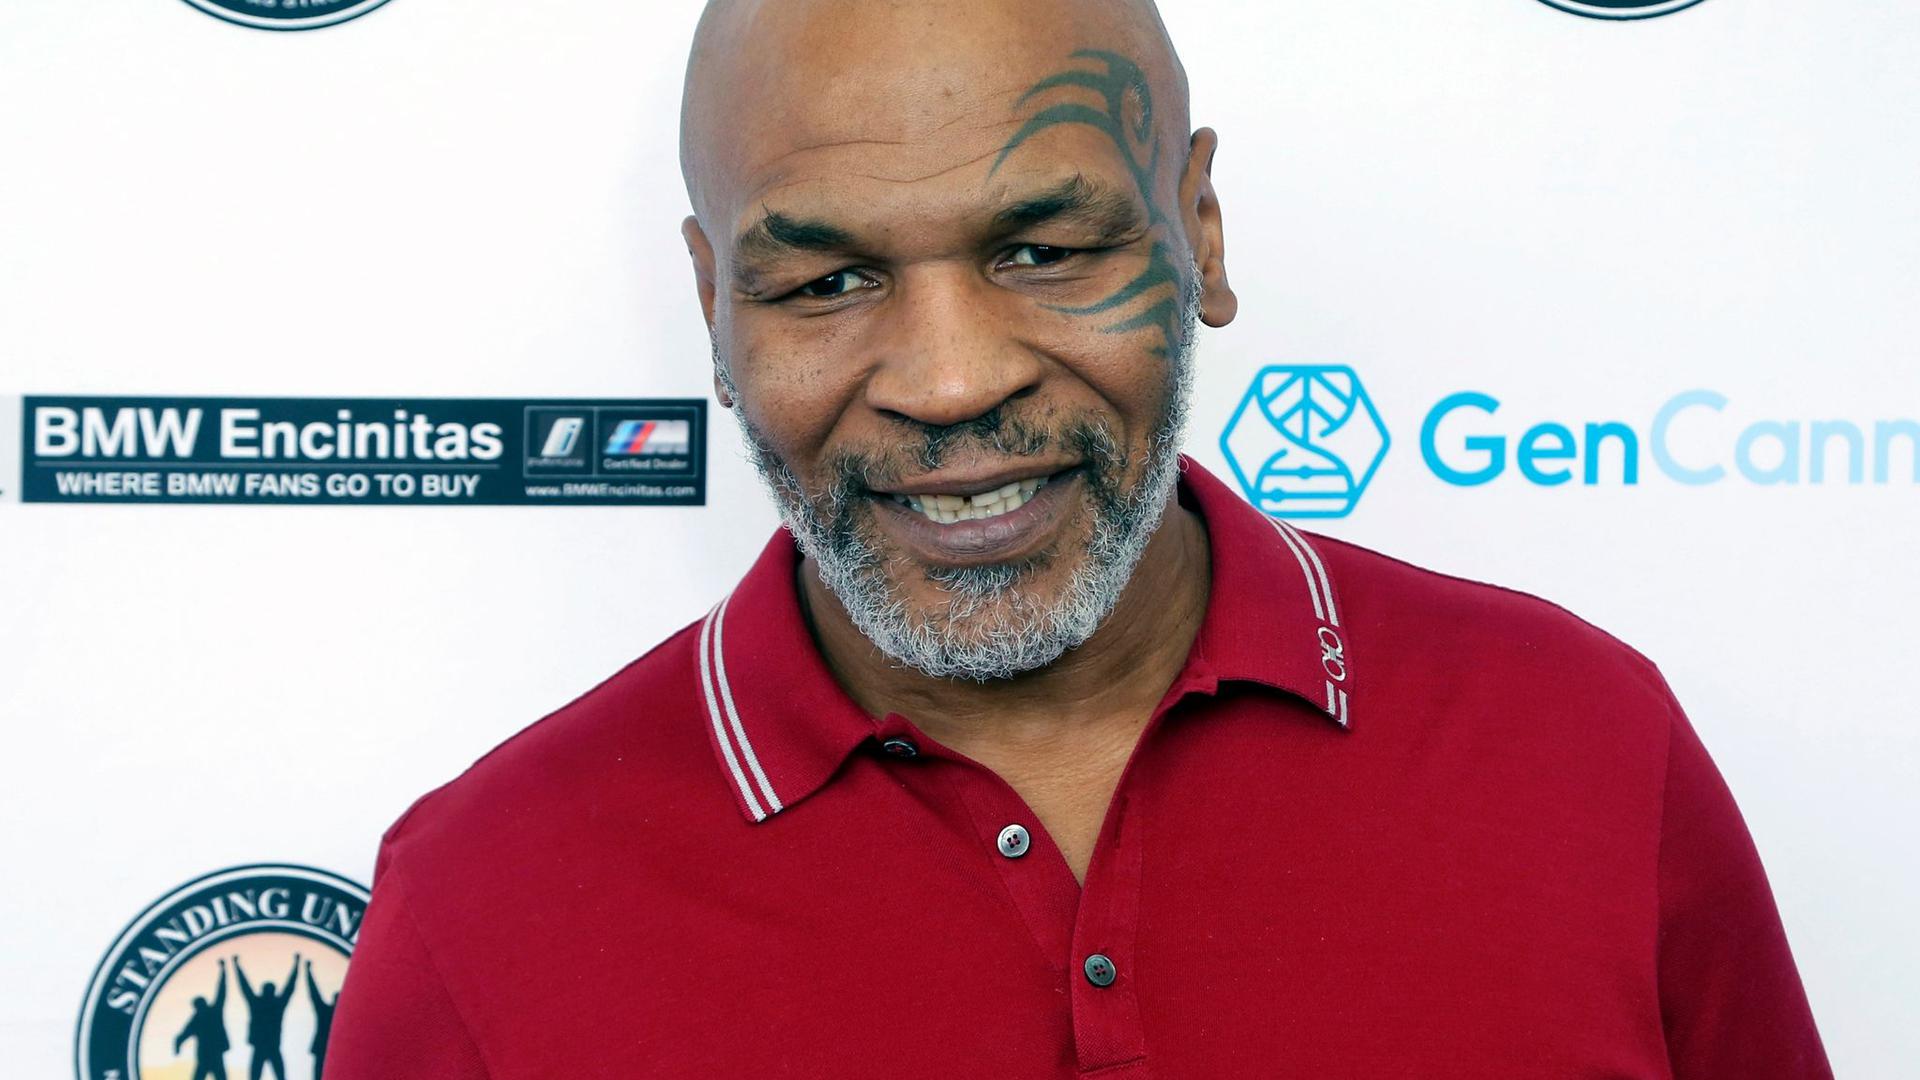 Ist die Wut mit ihm durchgegangen? Ex-Boxer Mike Tyson soll einen Mann im Flugzeug verprügelt haben.